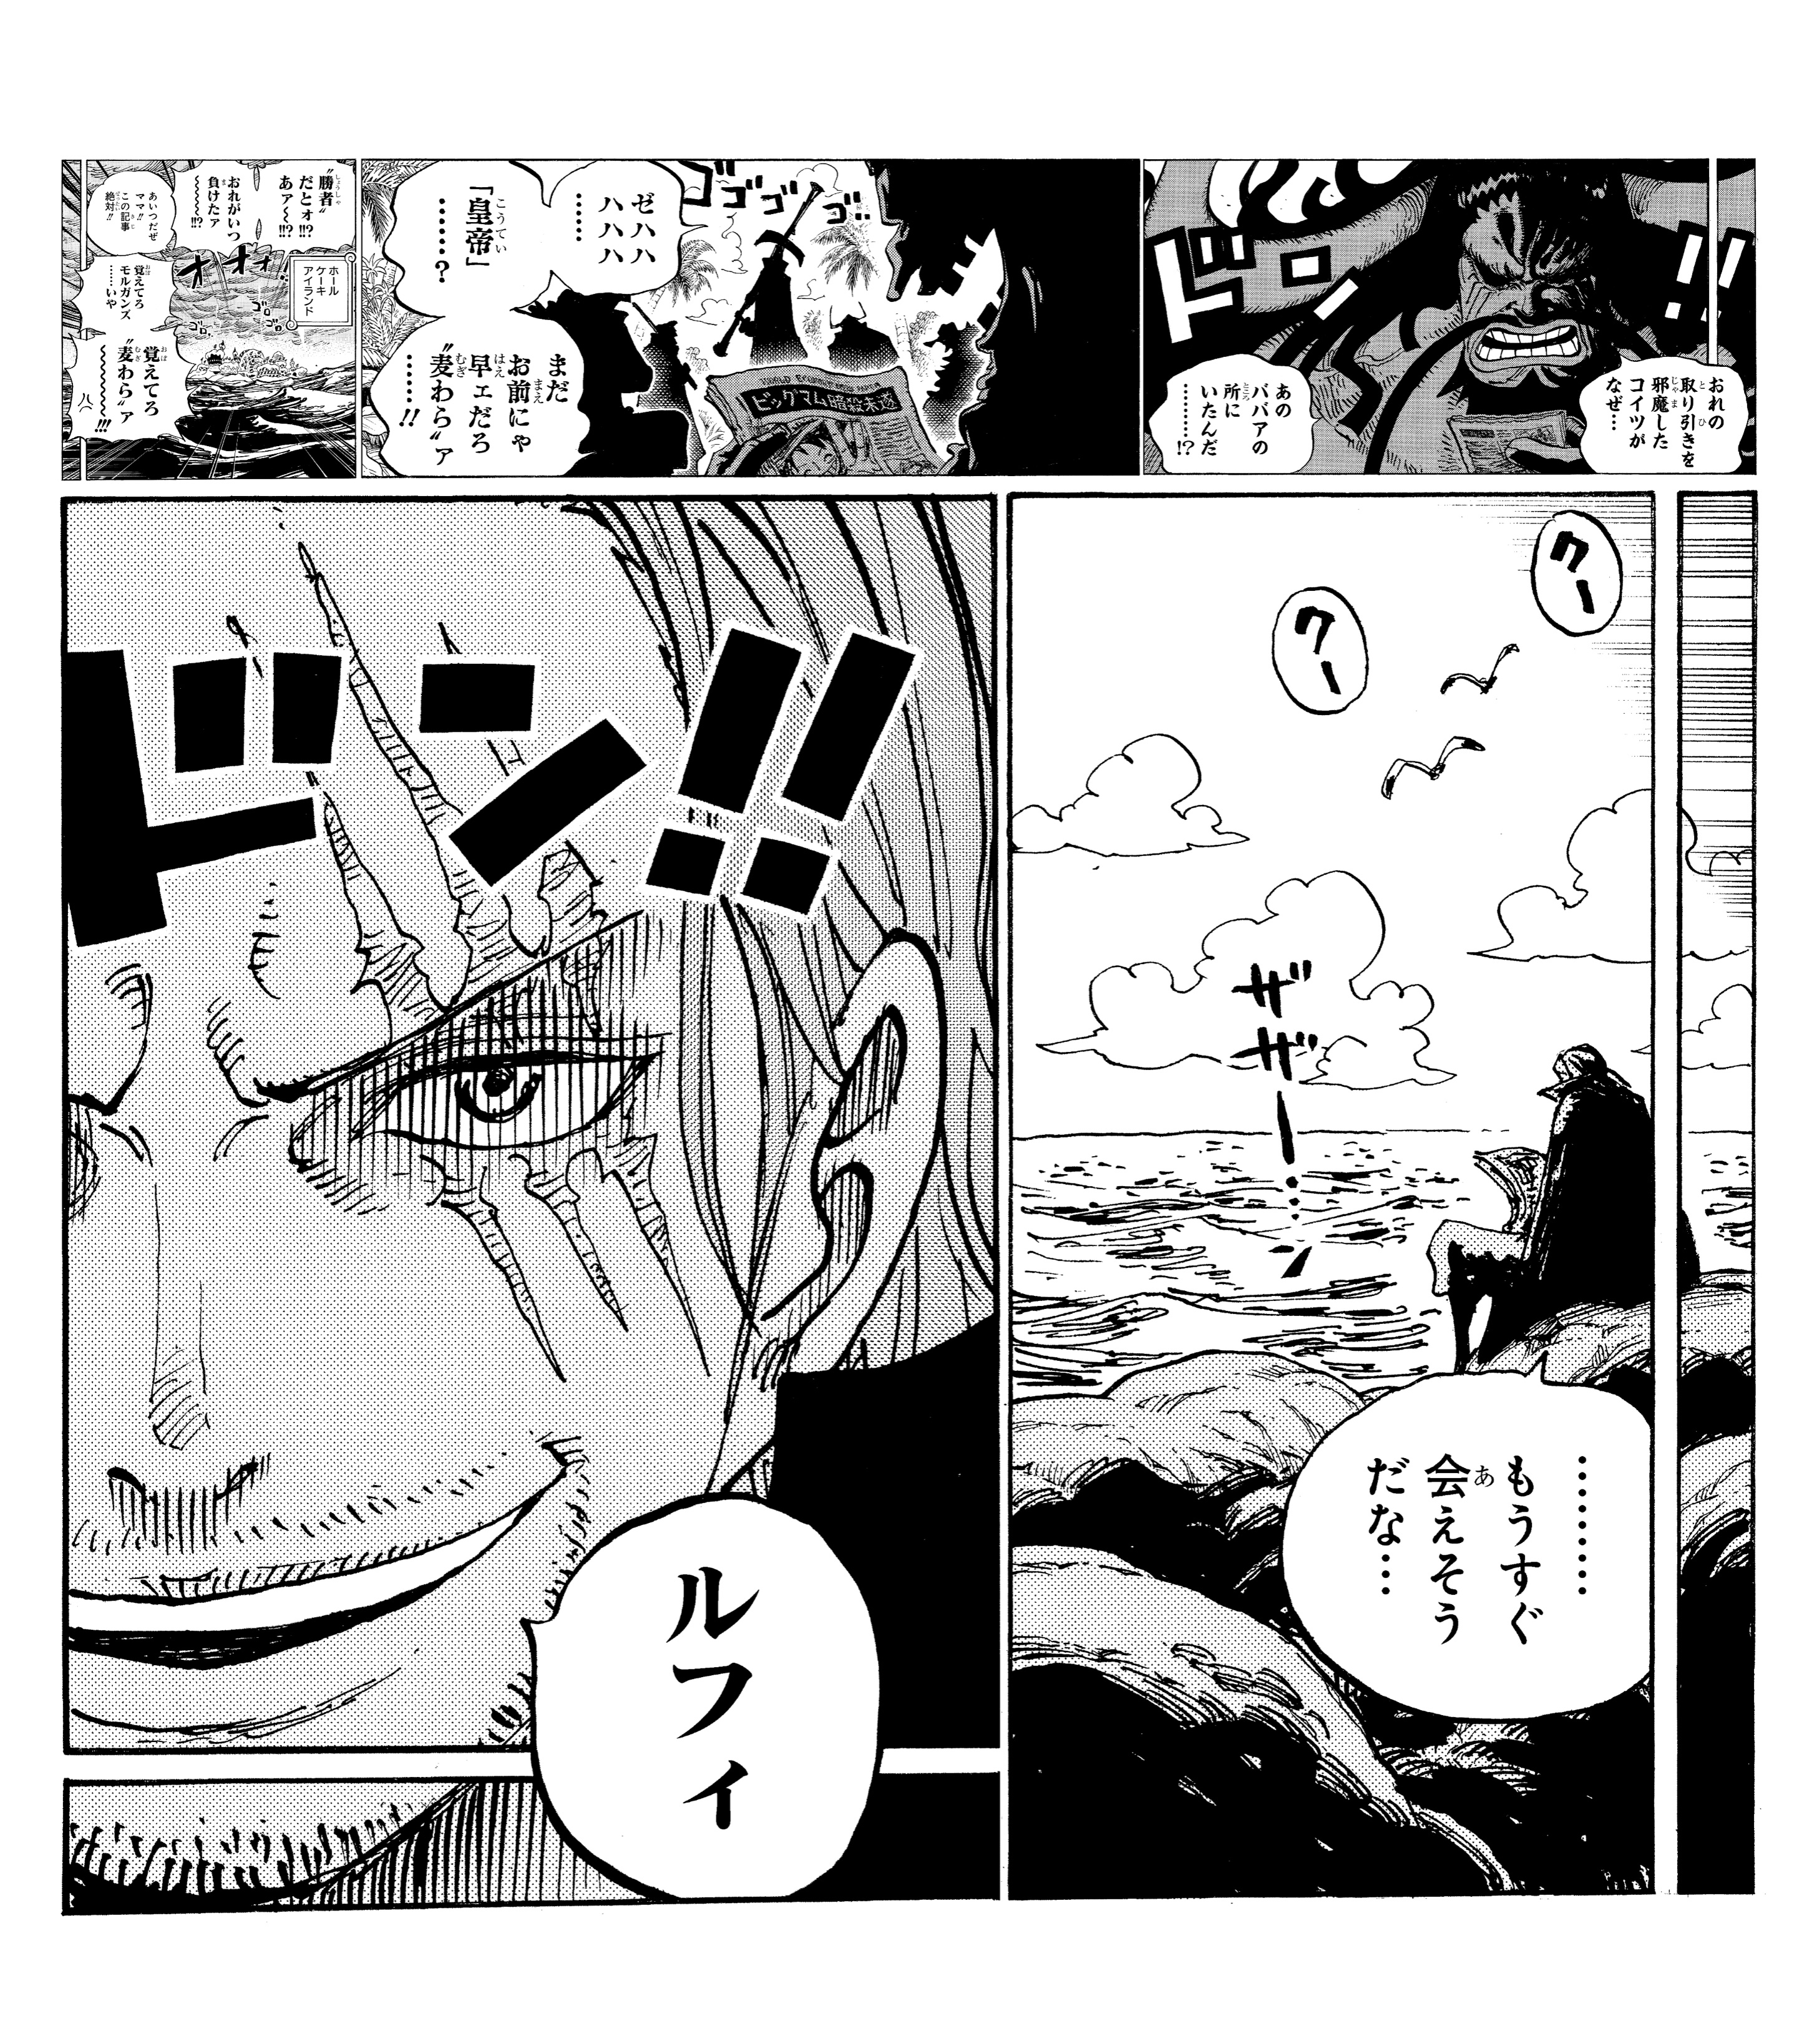 One Piece スタッフ 公式 Official きょうのsbs ゼブラックとジャンプ で62 90巻 無料でよめるのは 明日まで ホールケーキアイランド編後の 四皇といえば ルフィが5番目の 海の皇帝 と 称された記事で話題持ちきり そしてあの男も 該当